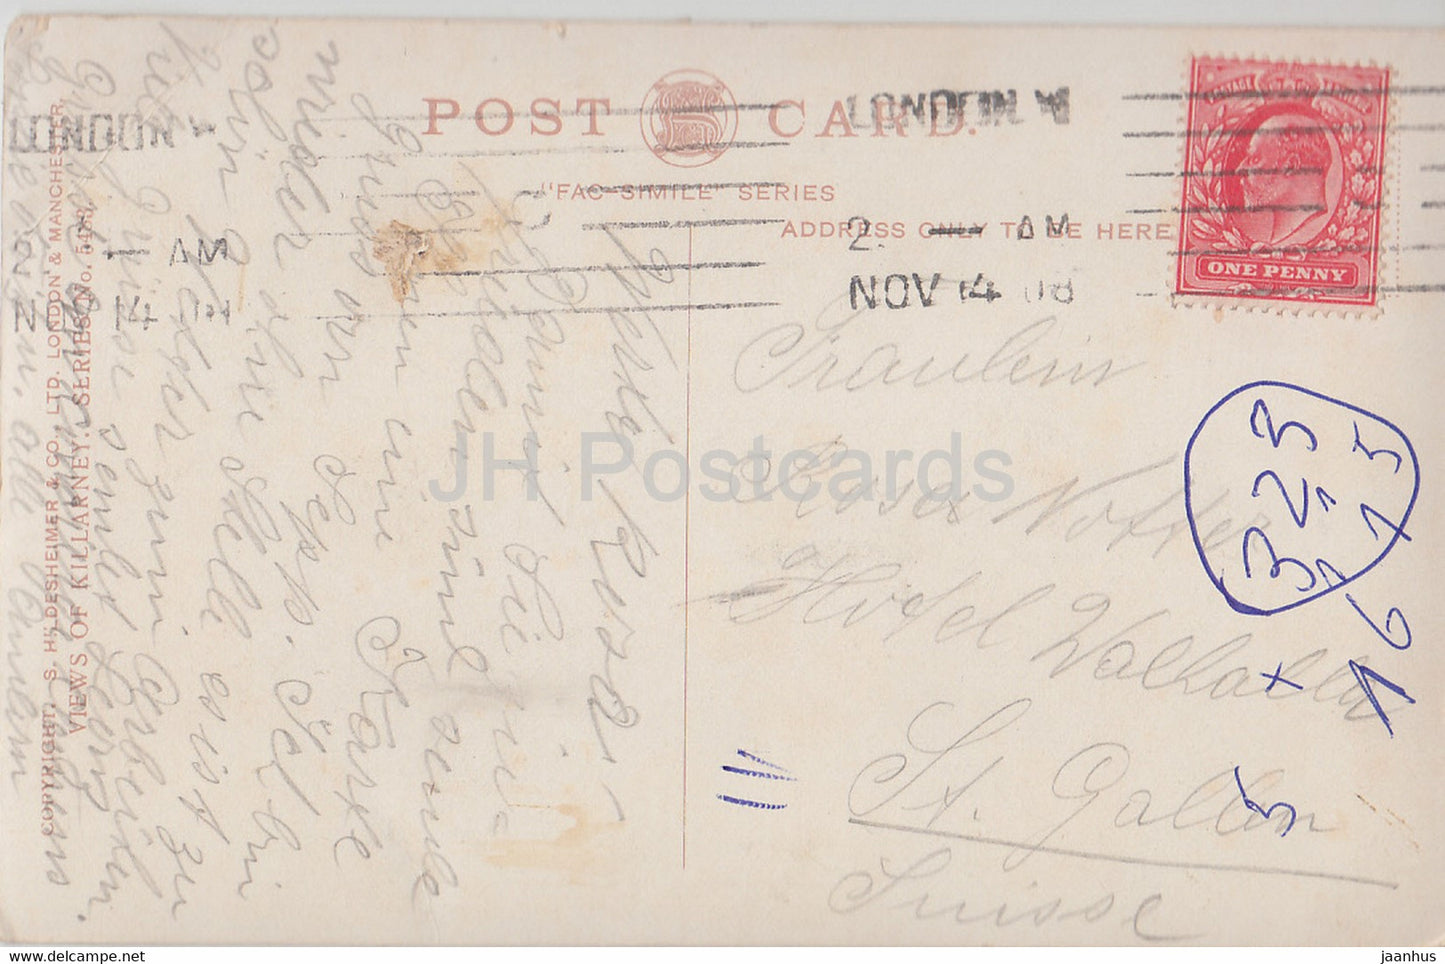 Killarney - Eagles Nest - carte postale ancienne - 1908 - Irlande - utilisé